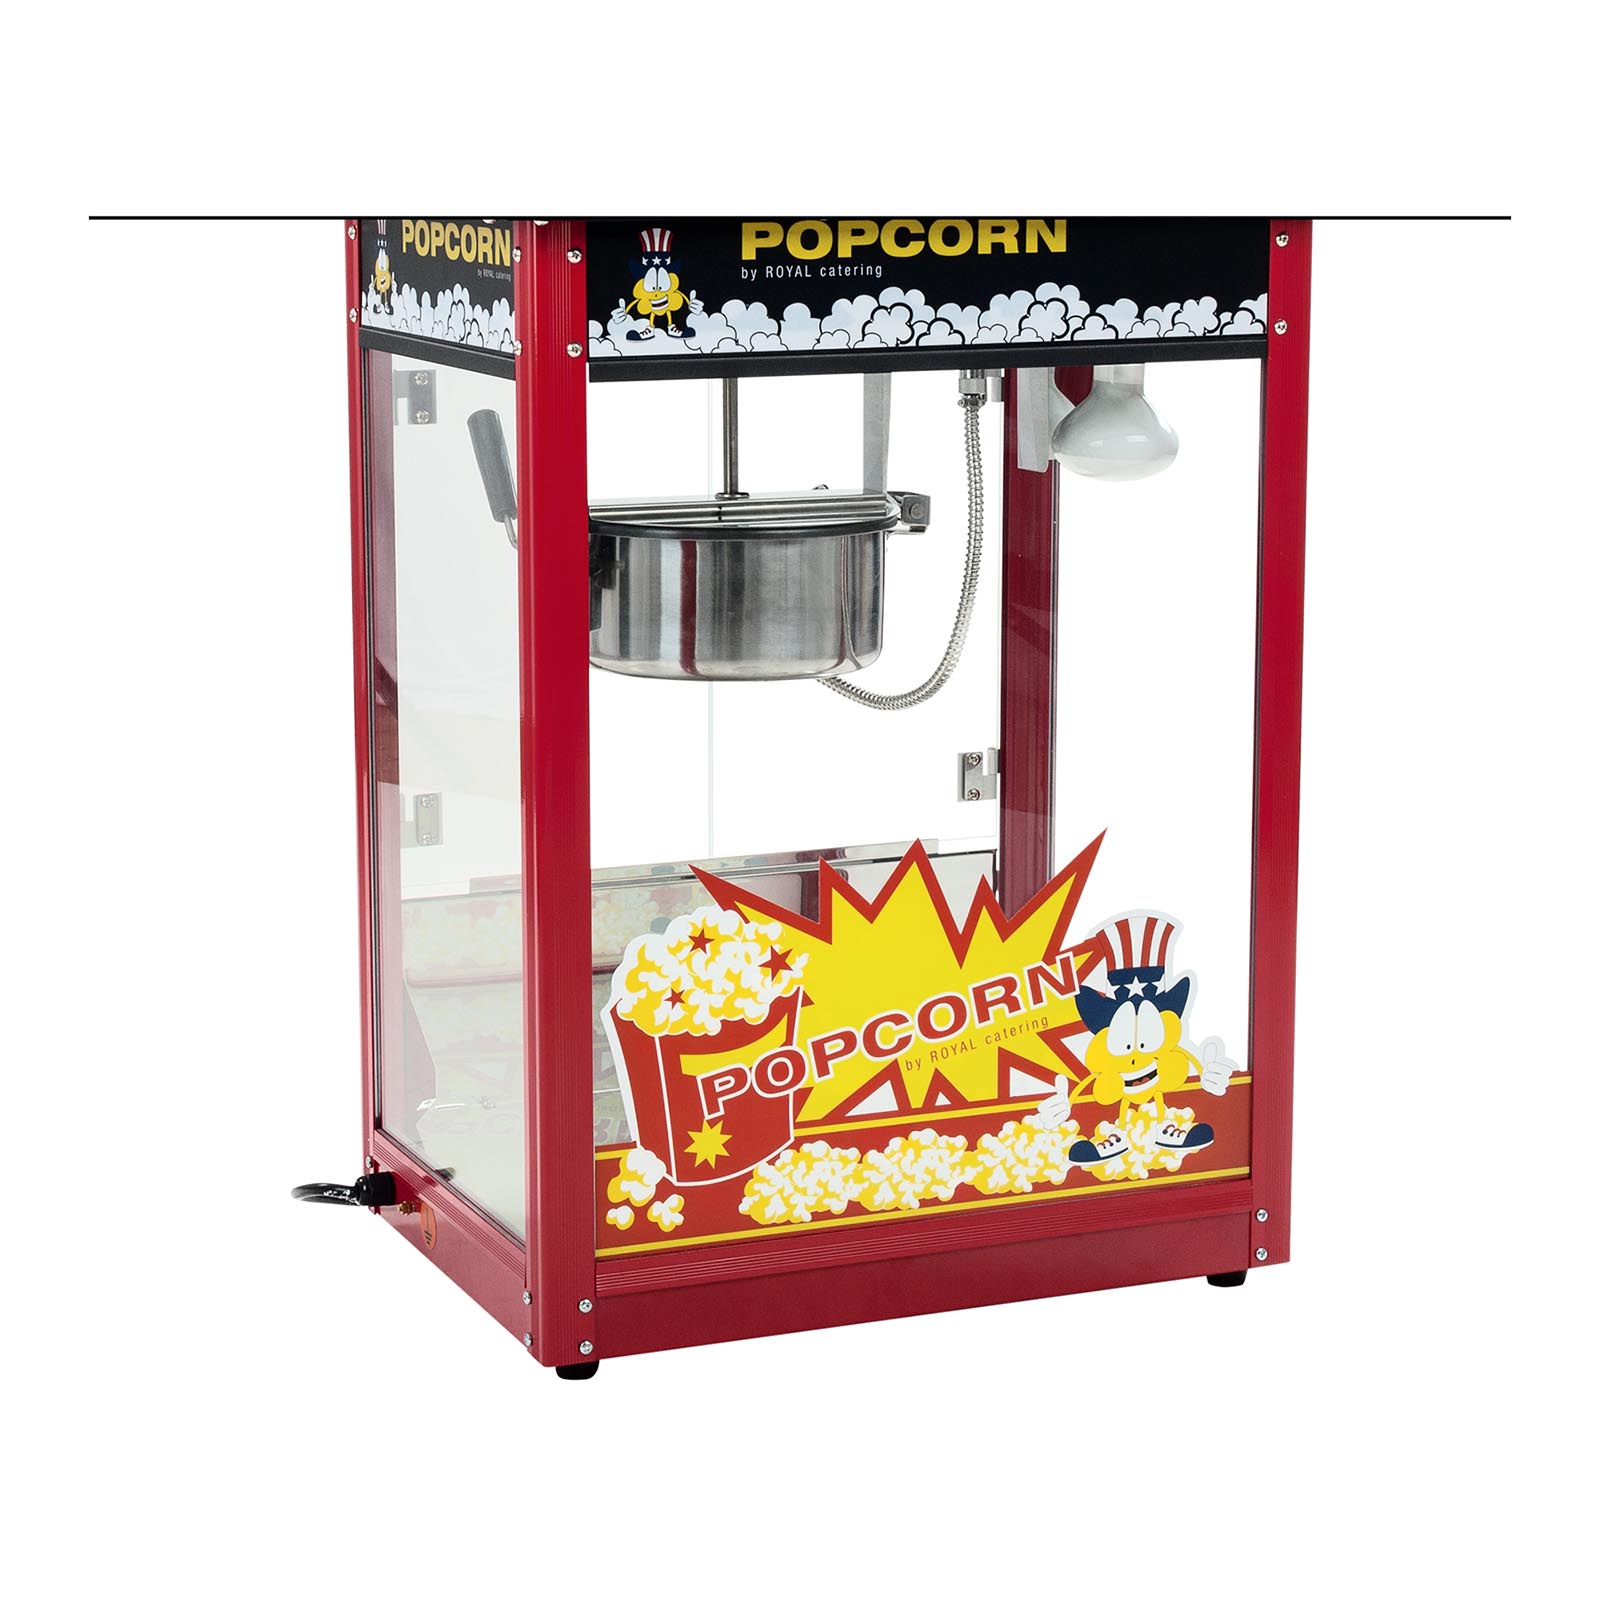 Pop-corn készitő gép és vattacukor készítő gép készlet - 1.600 W/1.200 W - szélfogó búra